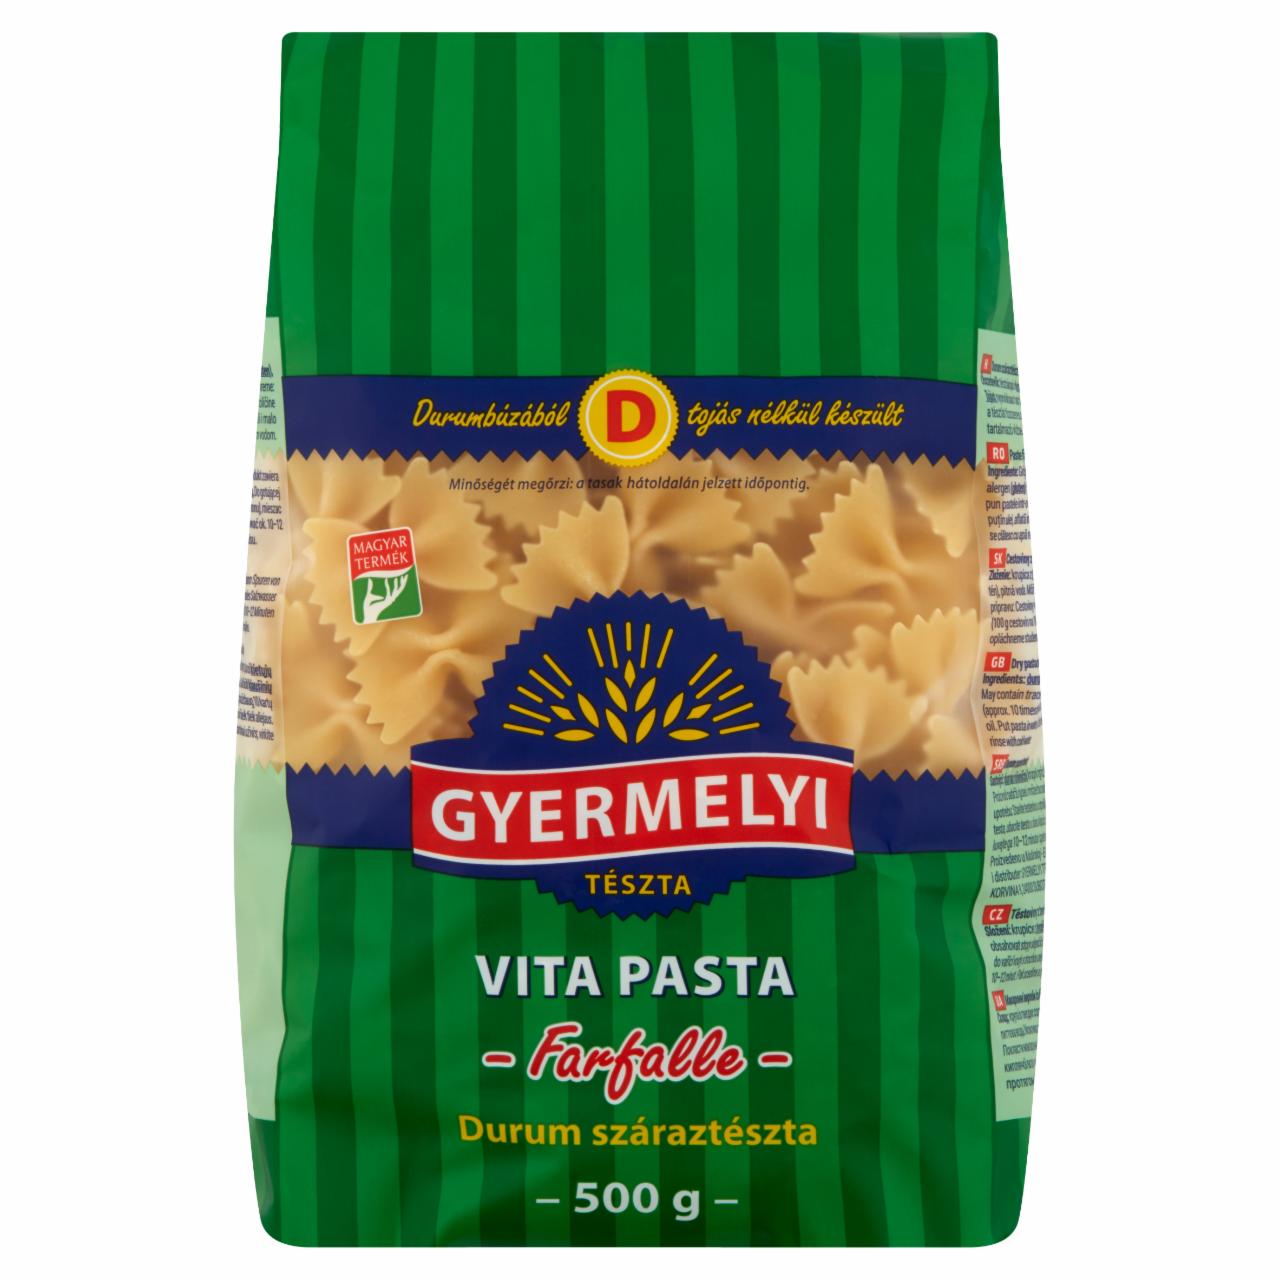 Képek - Gyermelyi Vita Pasta Farfalle durum száraztészta 500 g